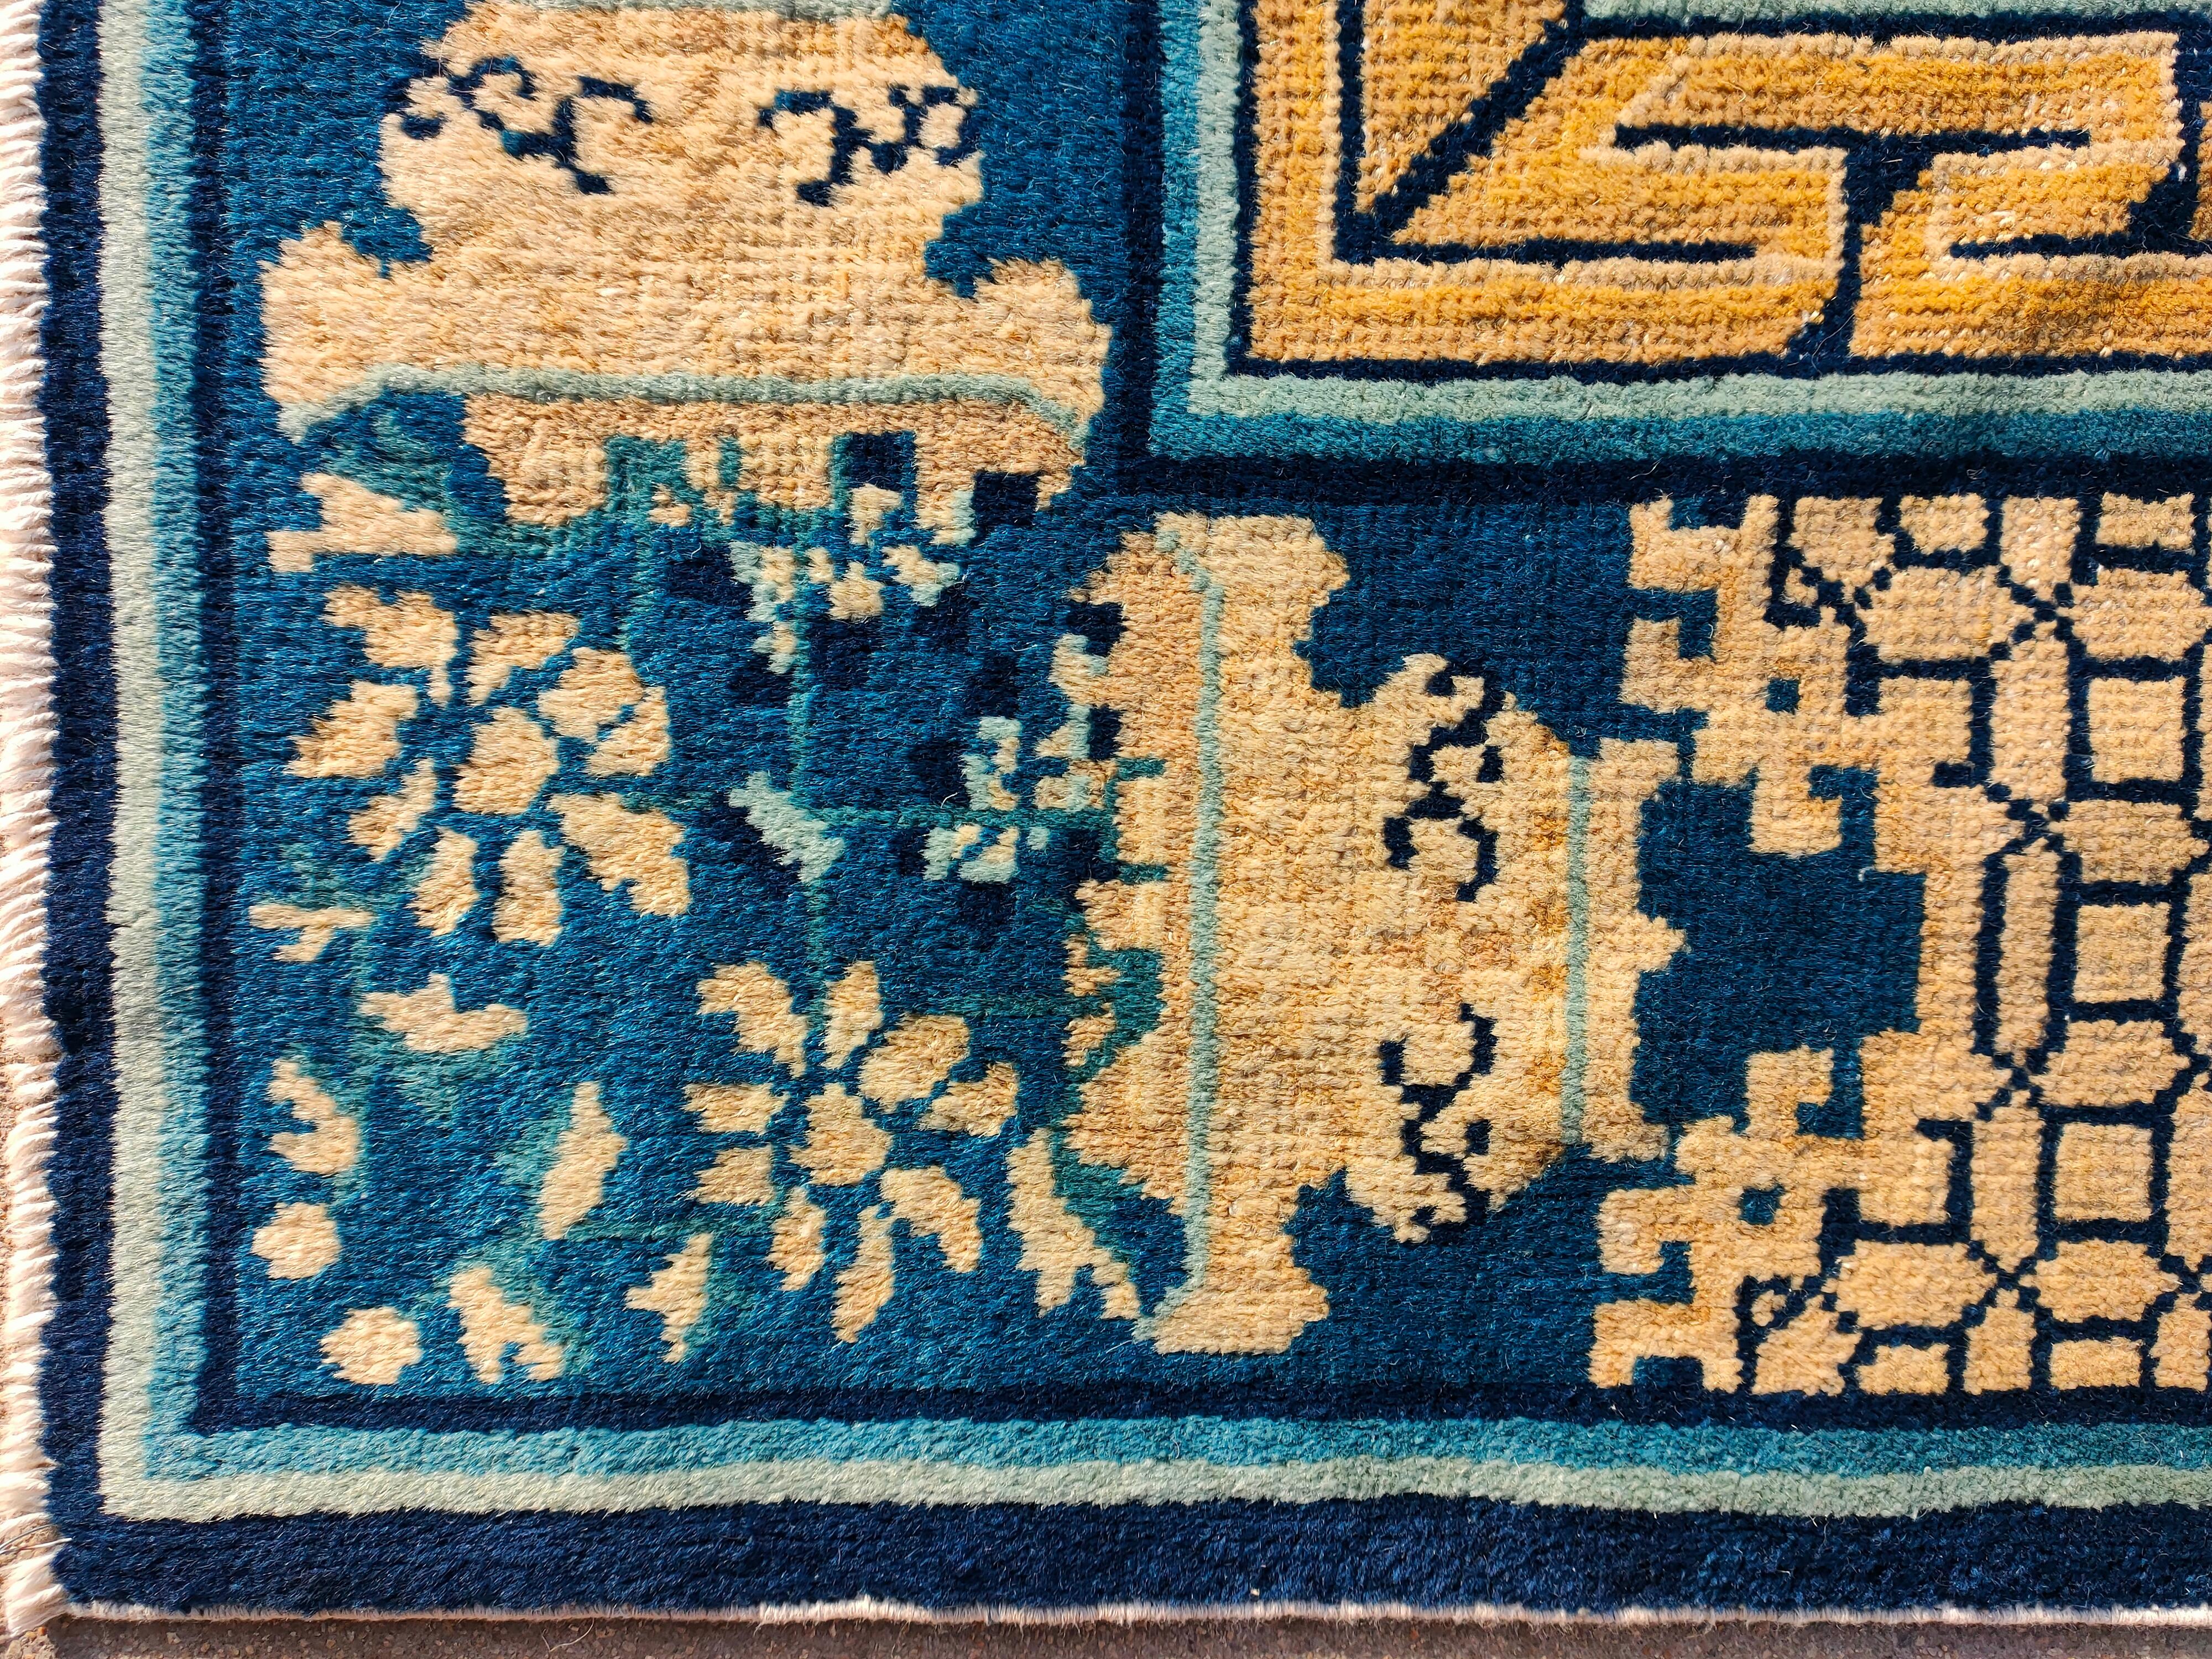 19th Century Chinese Peking Dragon Carpet ( 6' x 8'8